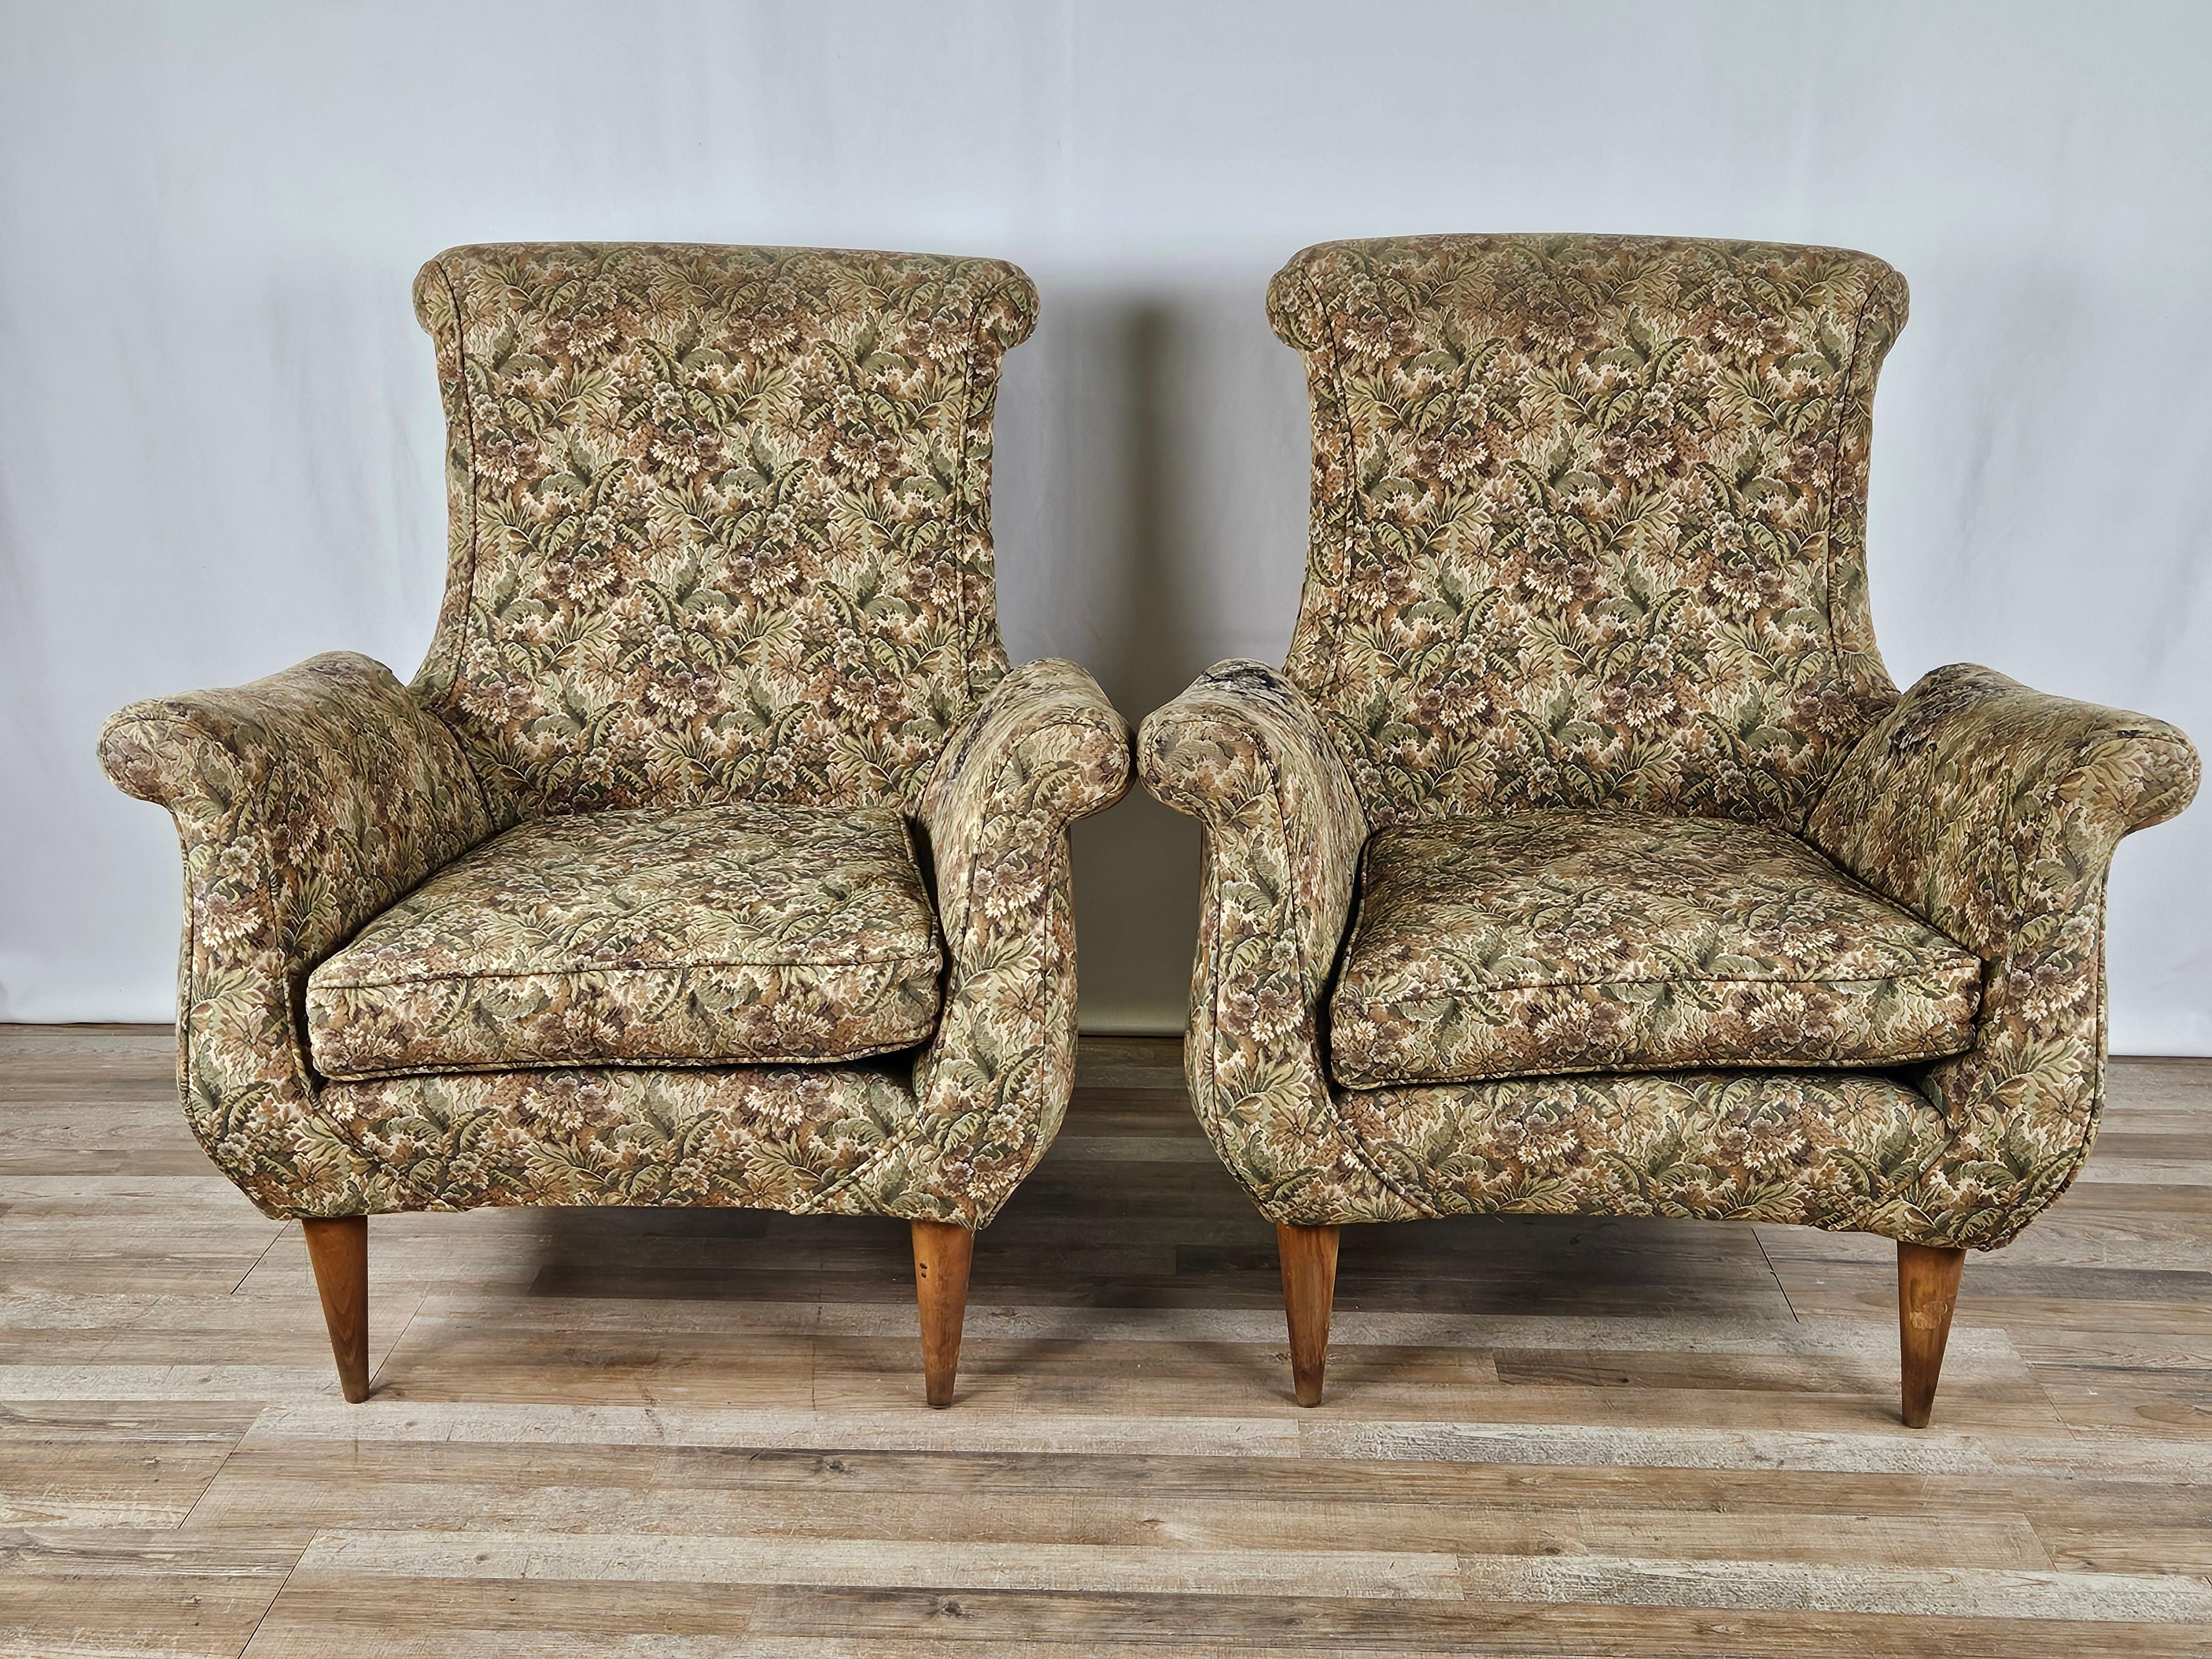 Grandes sillones antiguos modernos italianos de los años 70 con cojín tapizado y patas de madera.

Estructura sana y silla robusta.

Es necesario cambiar la tela como se muestra en la foto.